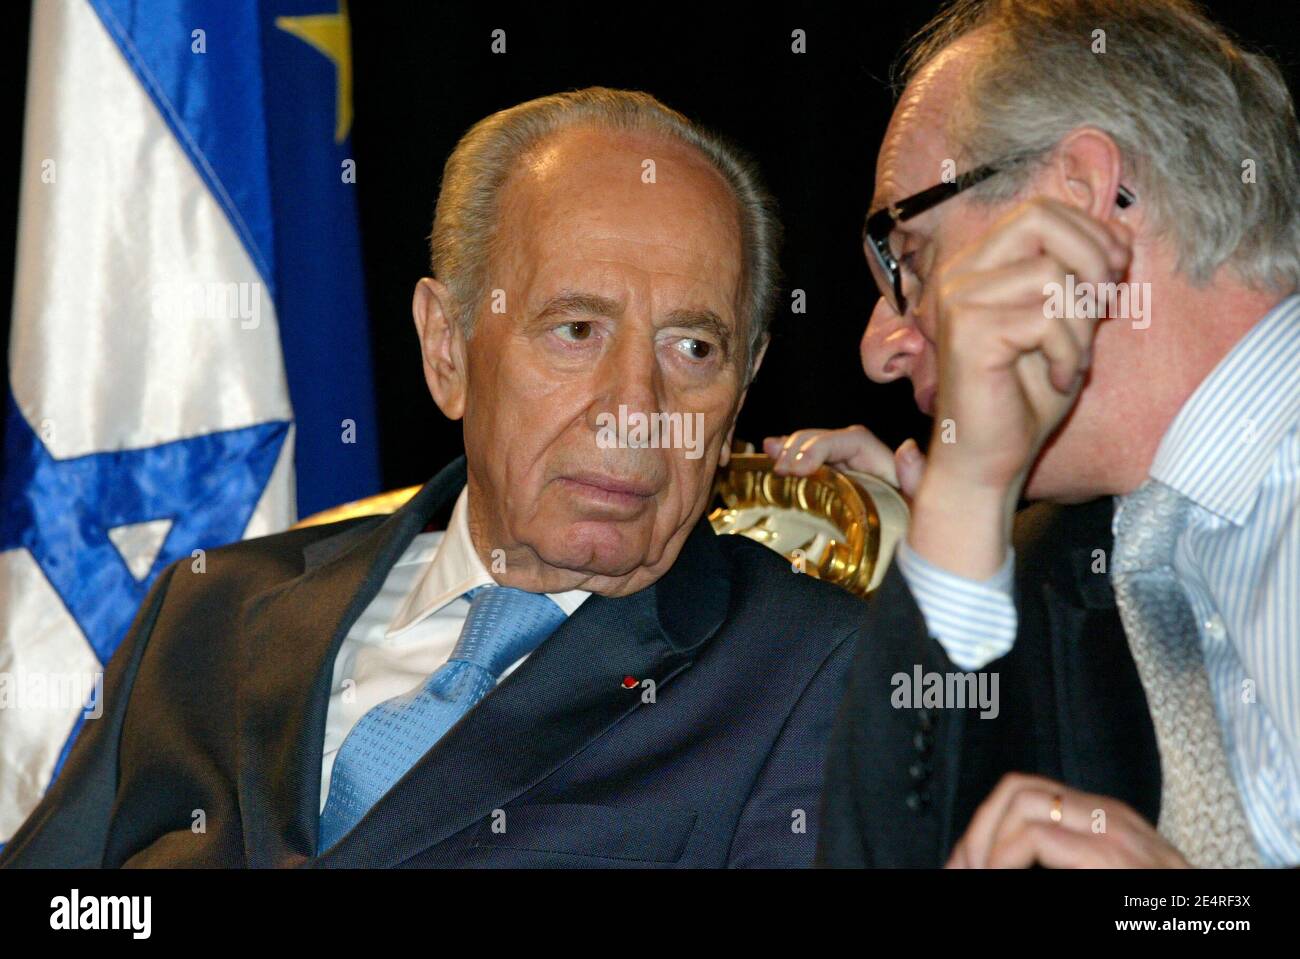 Le Président israélien Shimon Peres visite le Centre d'histoire de la résistance et de la Déportation à Lyon, France, le 12 mars 2008. Photo de Pascal Fayolle/Pool/ABACAPRESS.COM Banque D'Images